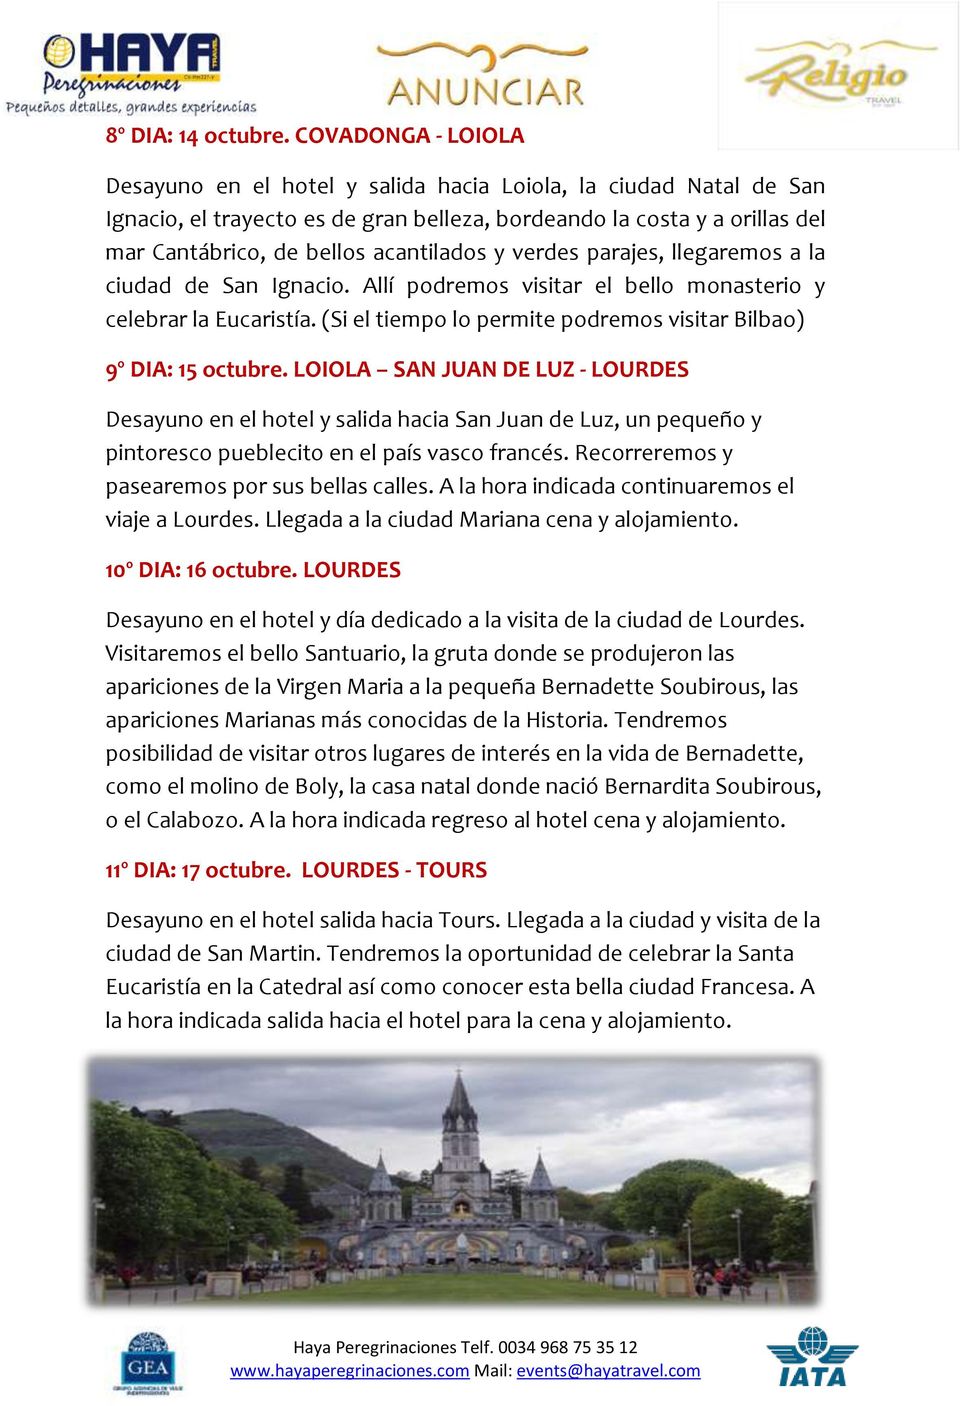 y verdes parajes, llegaremos a la ciudad de San Ignacio. Allí podremos visitar el bello monasterio y celebrar la Eucaristía. (Si el tiempo lo permite podremos visitar Bilbao) 9º DIA: 15 octubre.